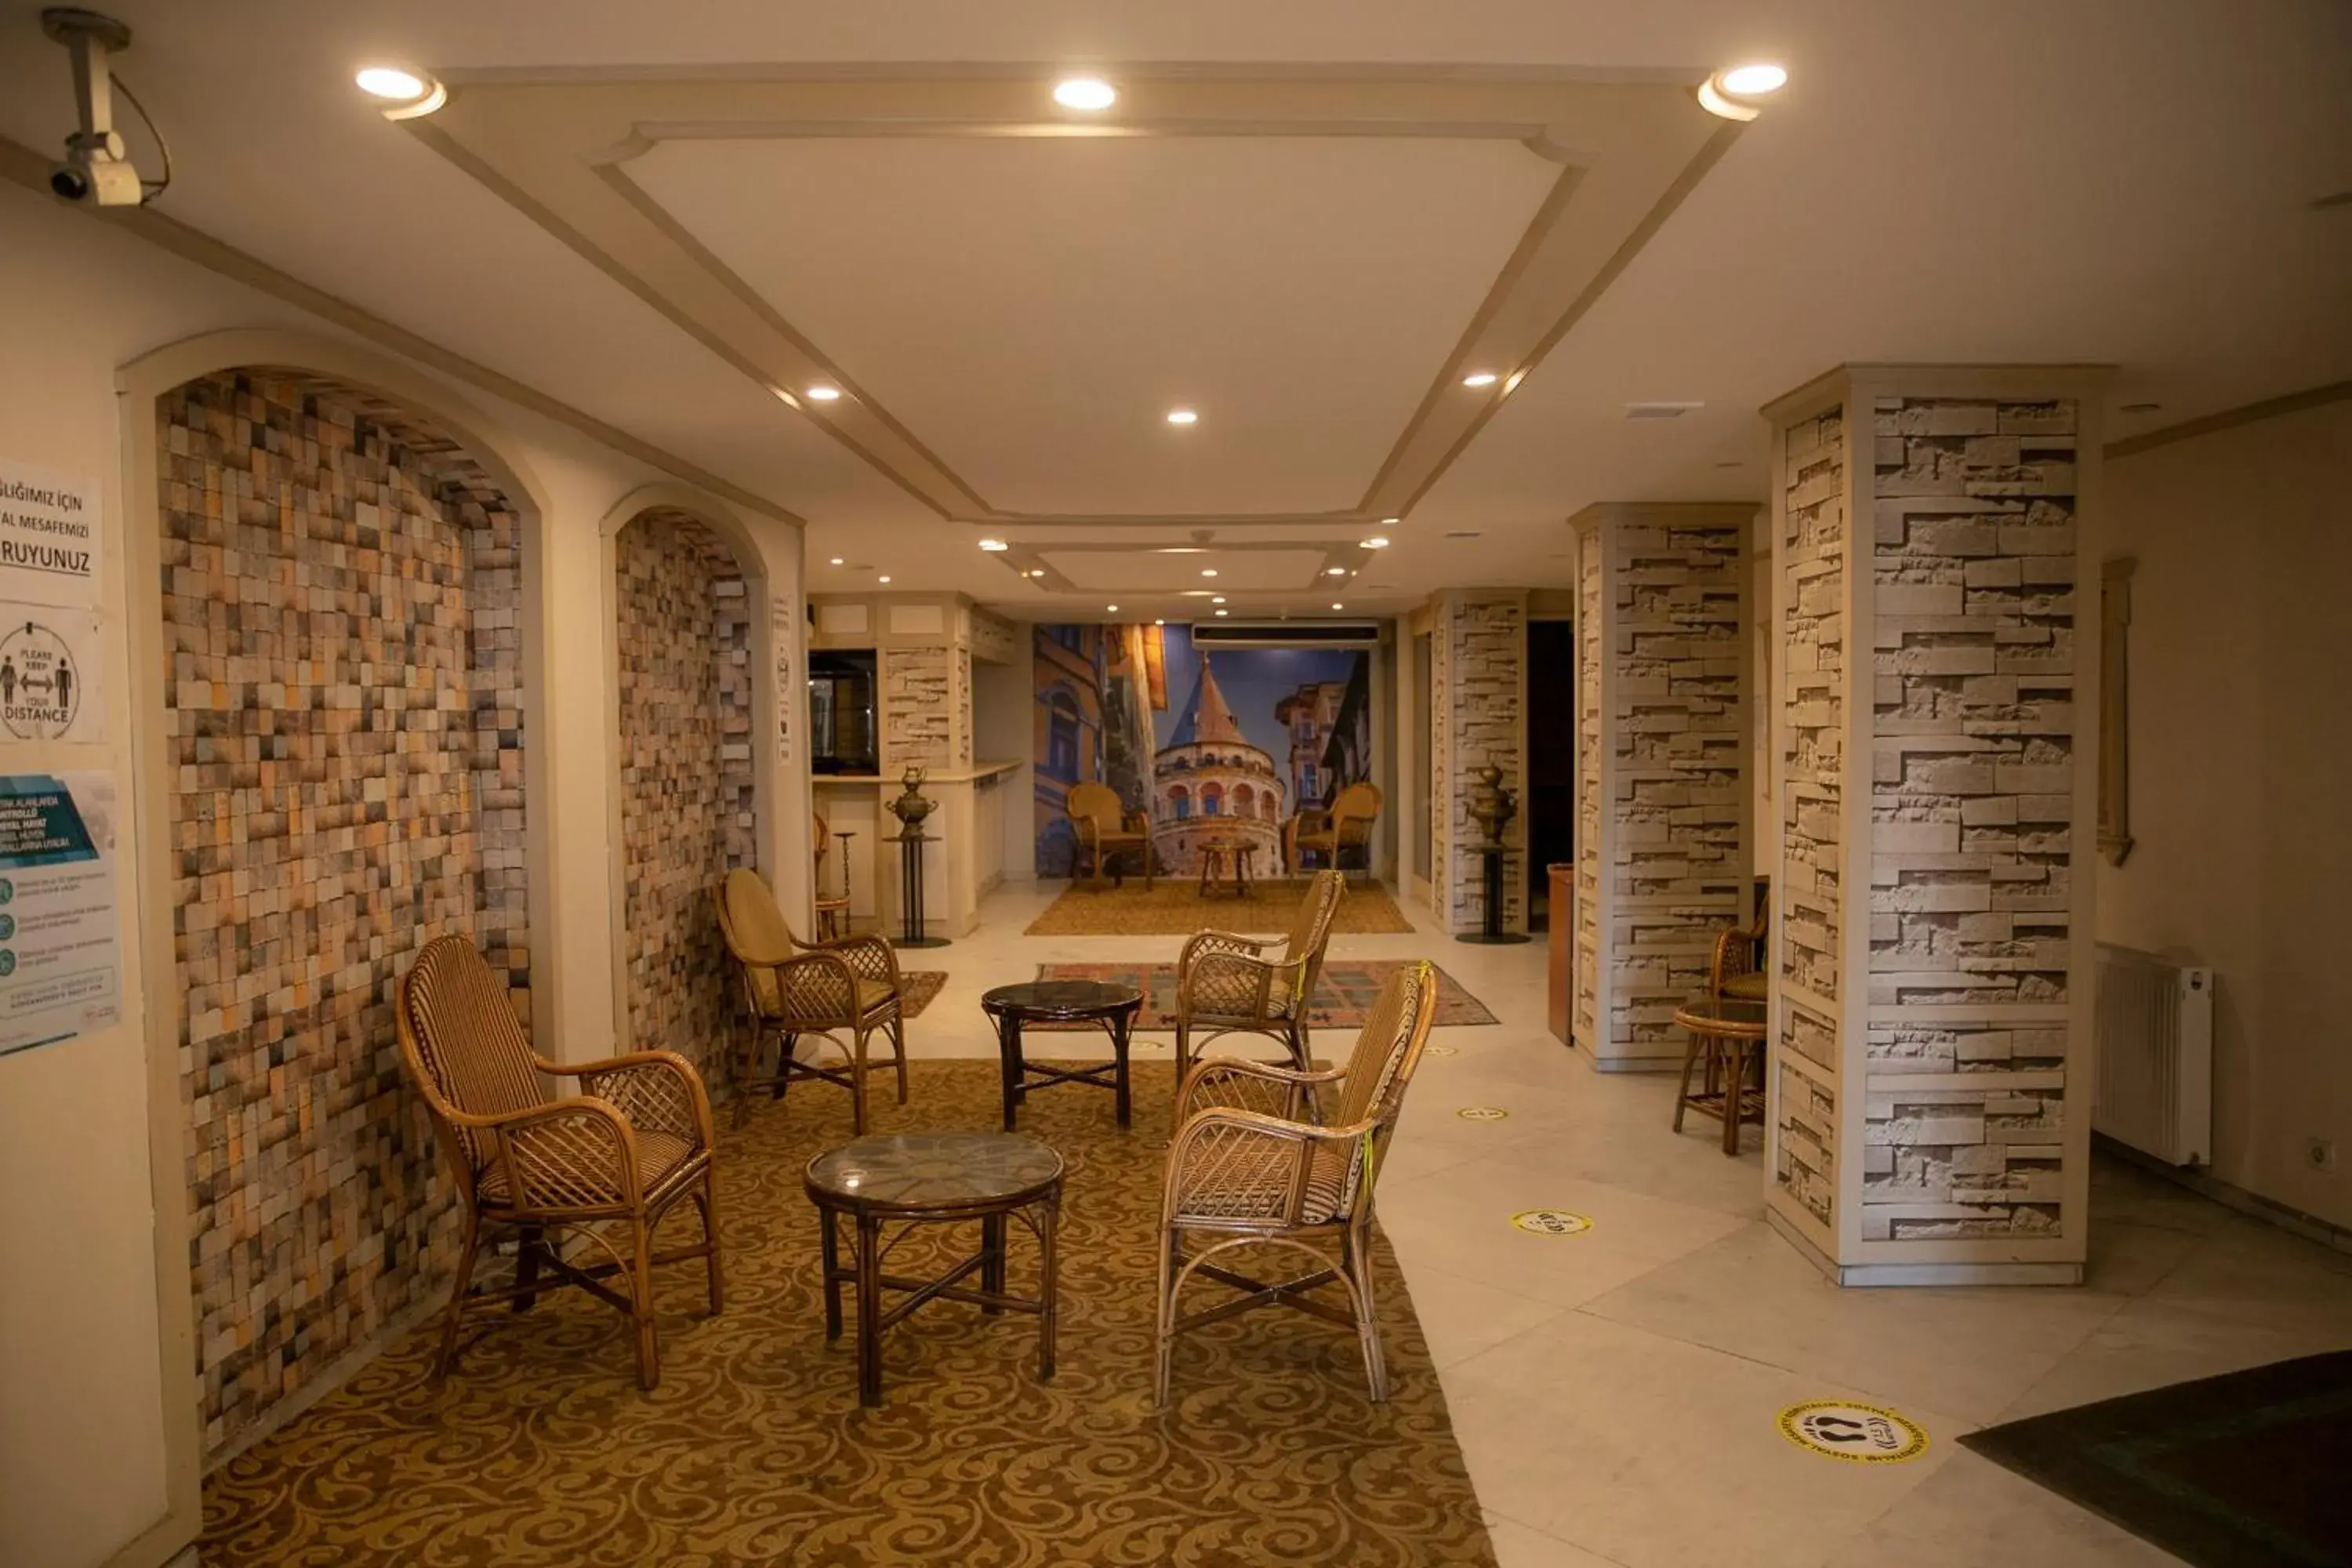 Lobby or reception in Hali Hotel